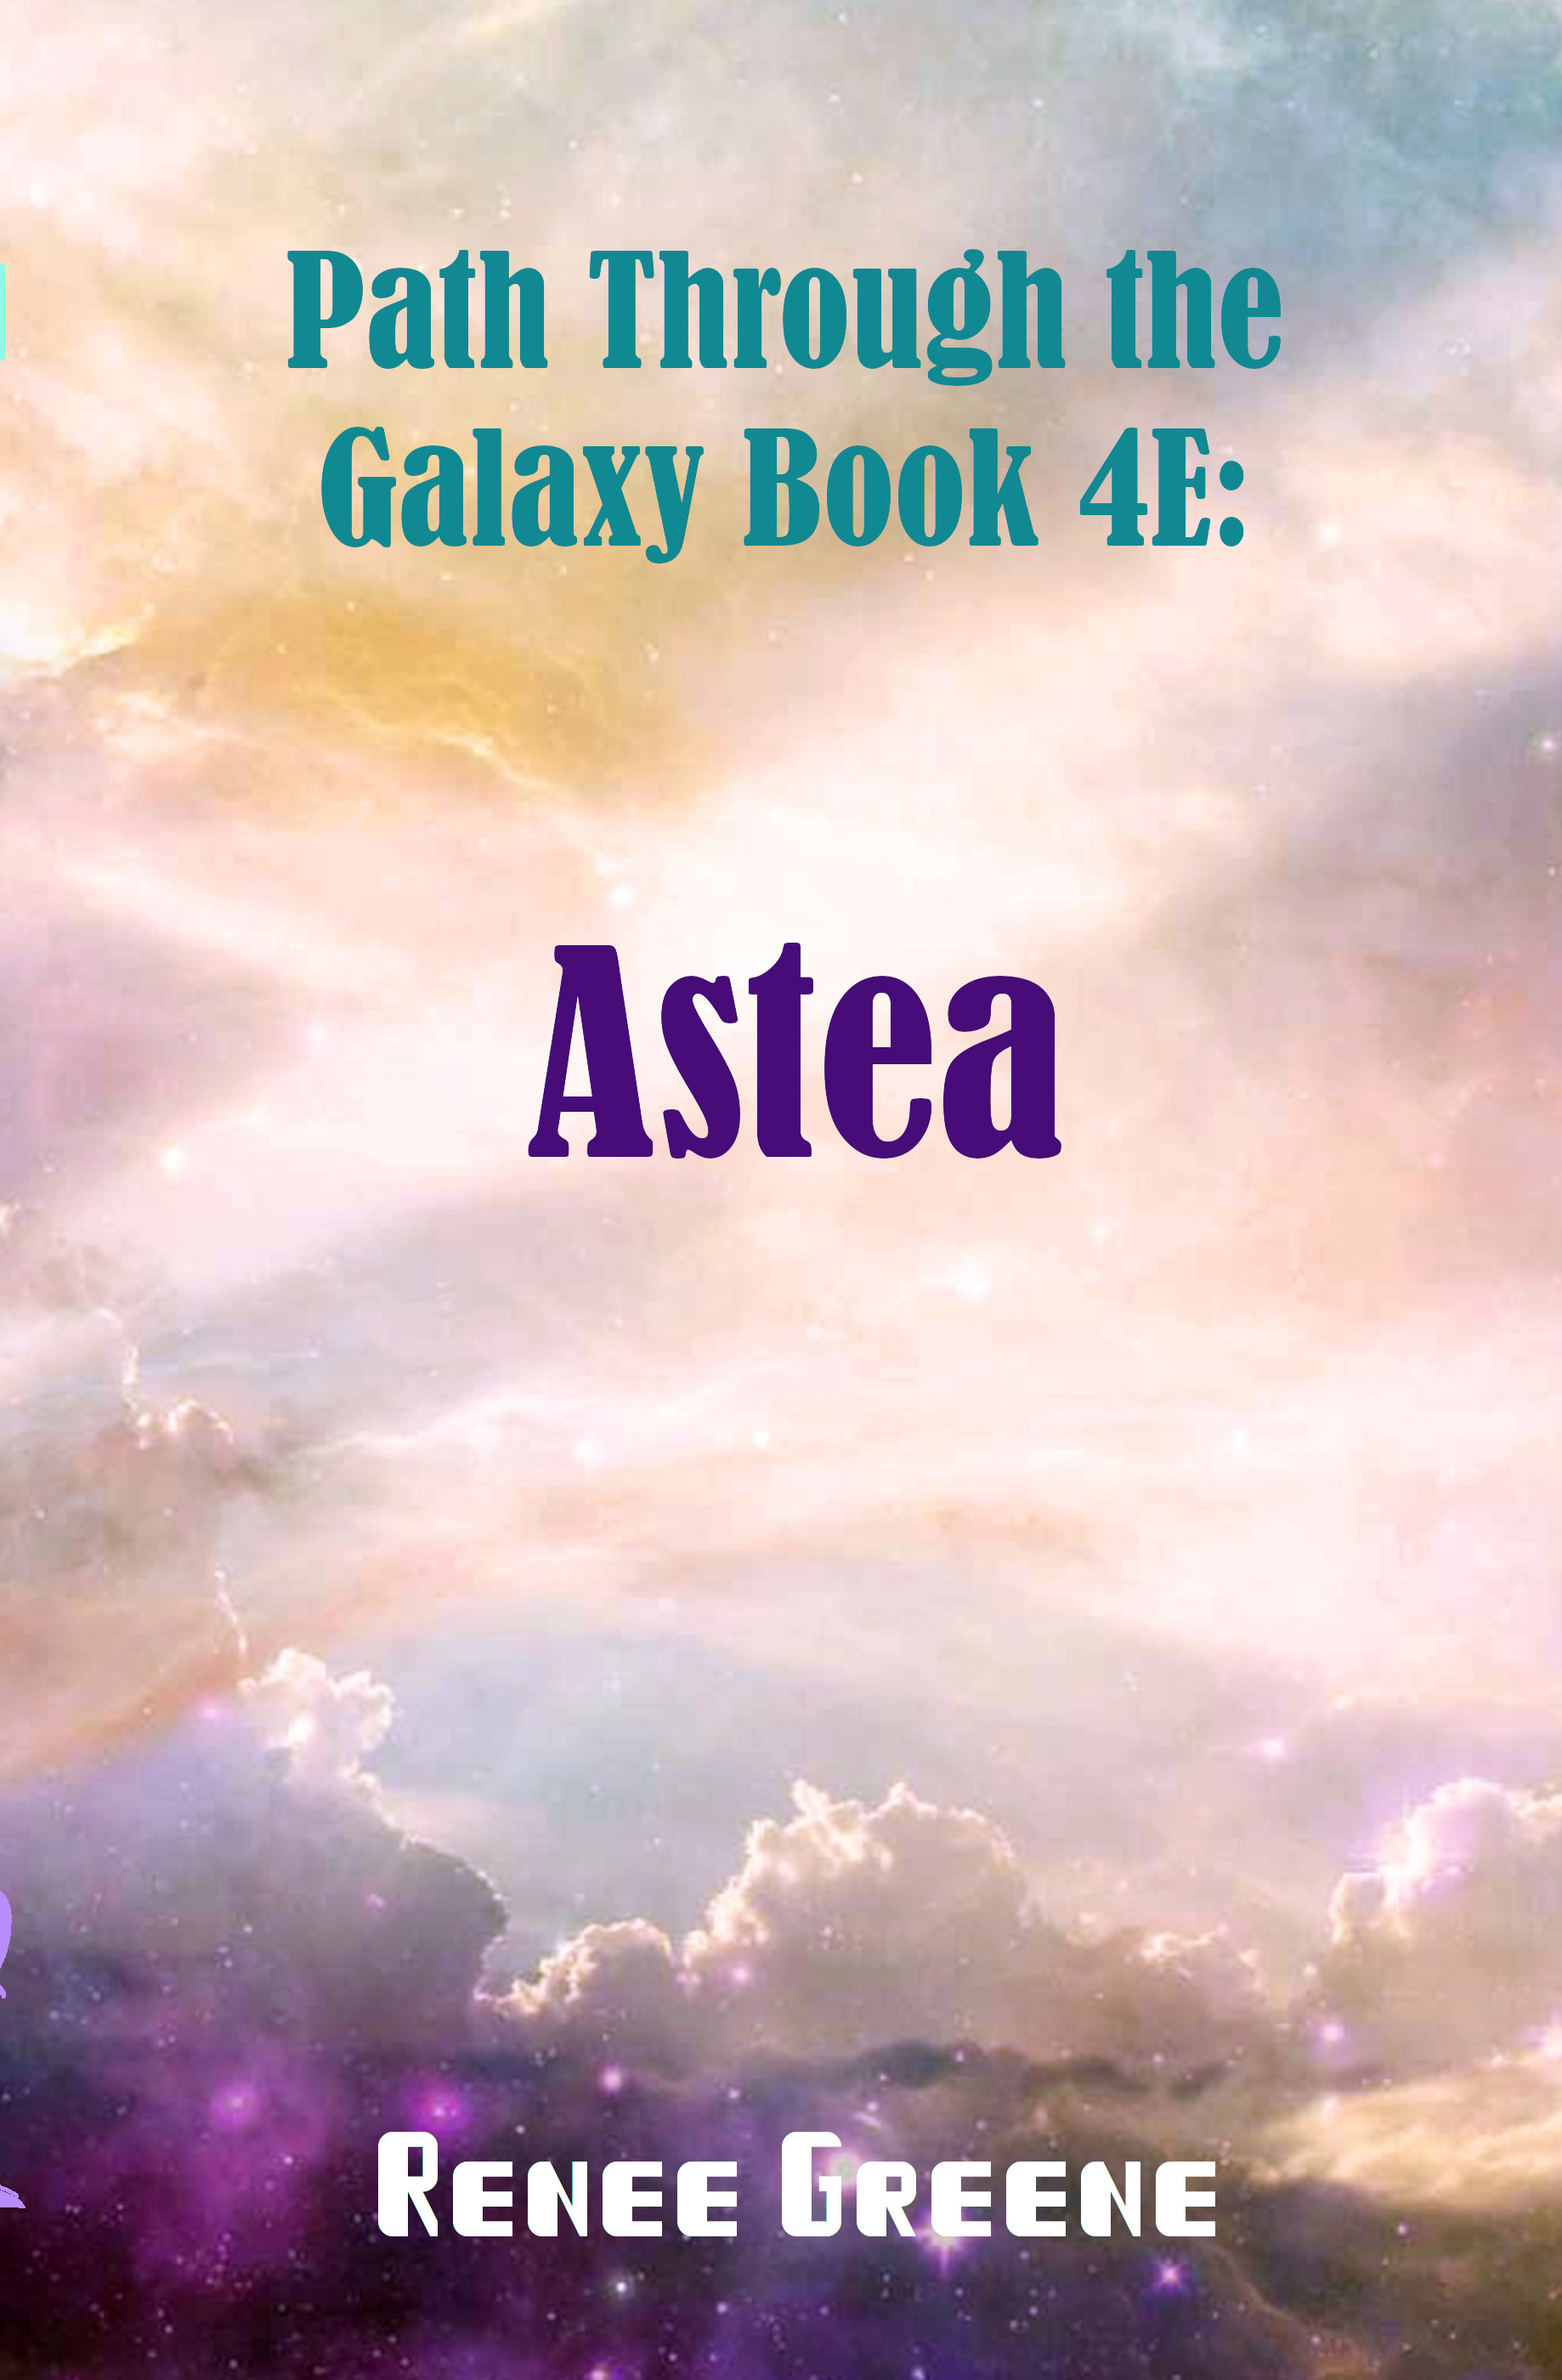 Path Through the Galaxy Book 4E: Astea